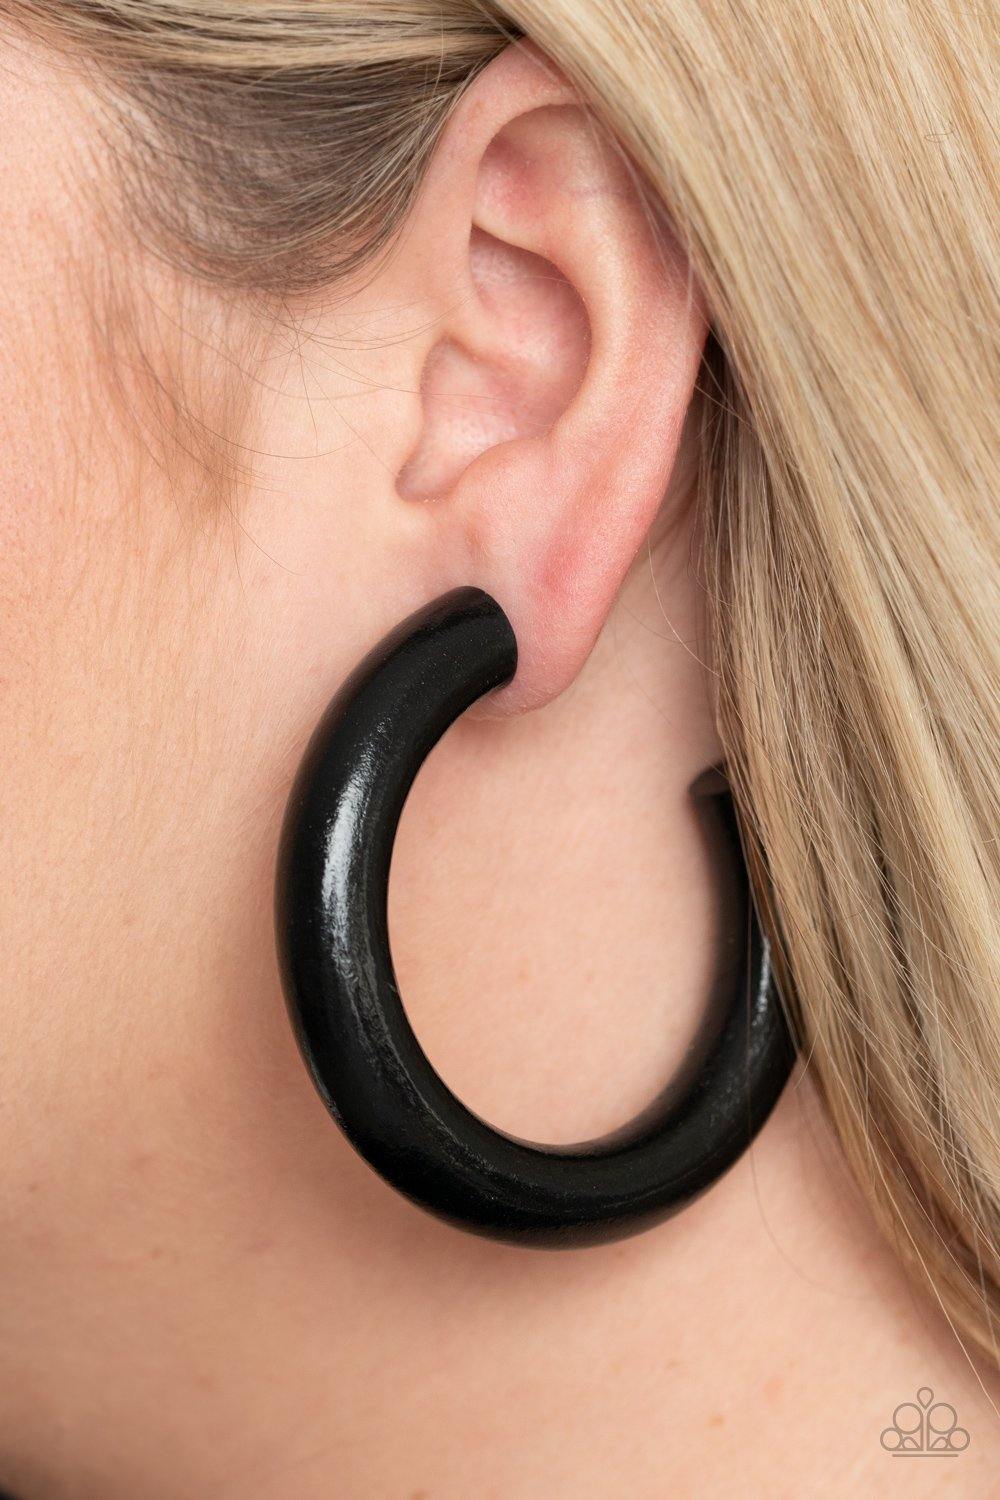 I WOOD Walk 500 Miles Black Earrings - Nothin' But Jewelry by Mz. Netta